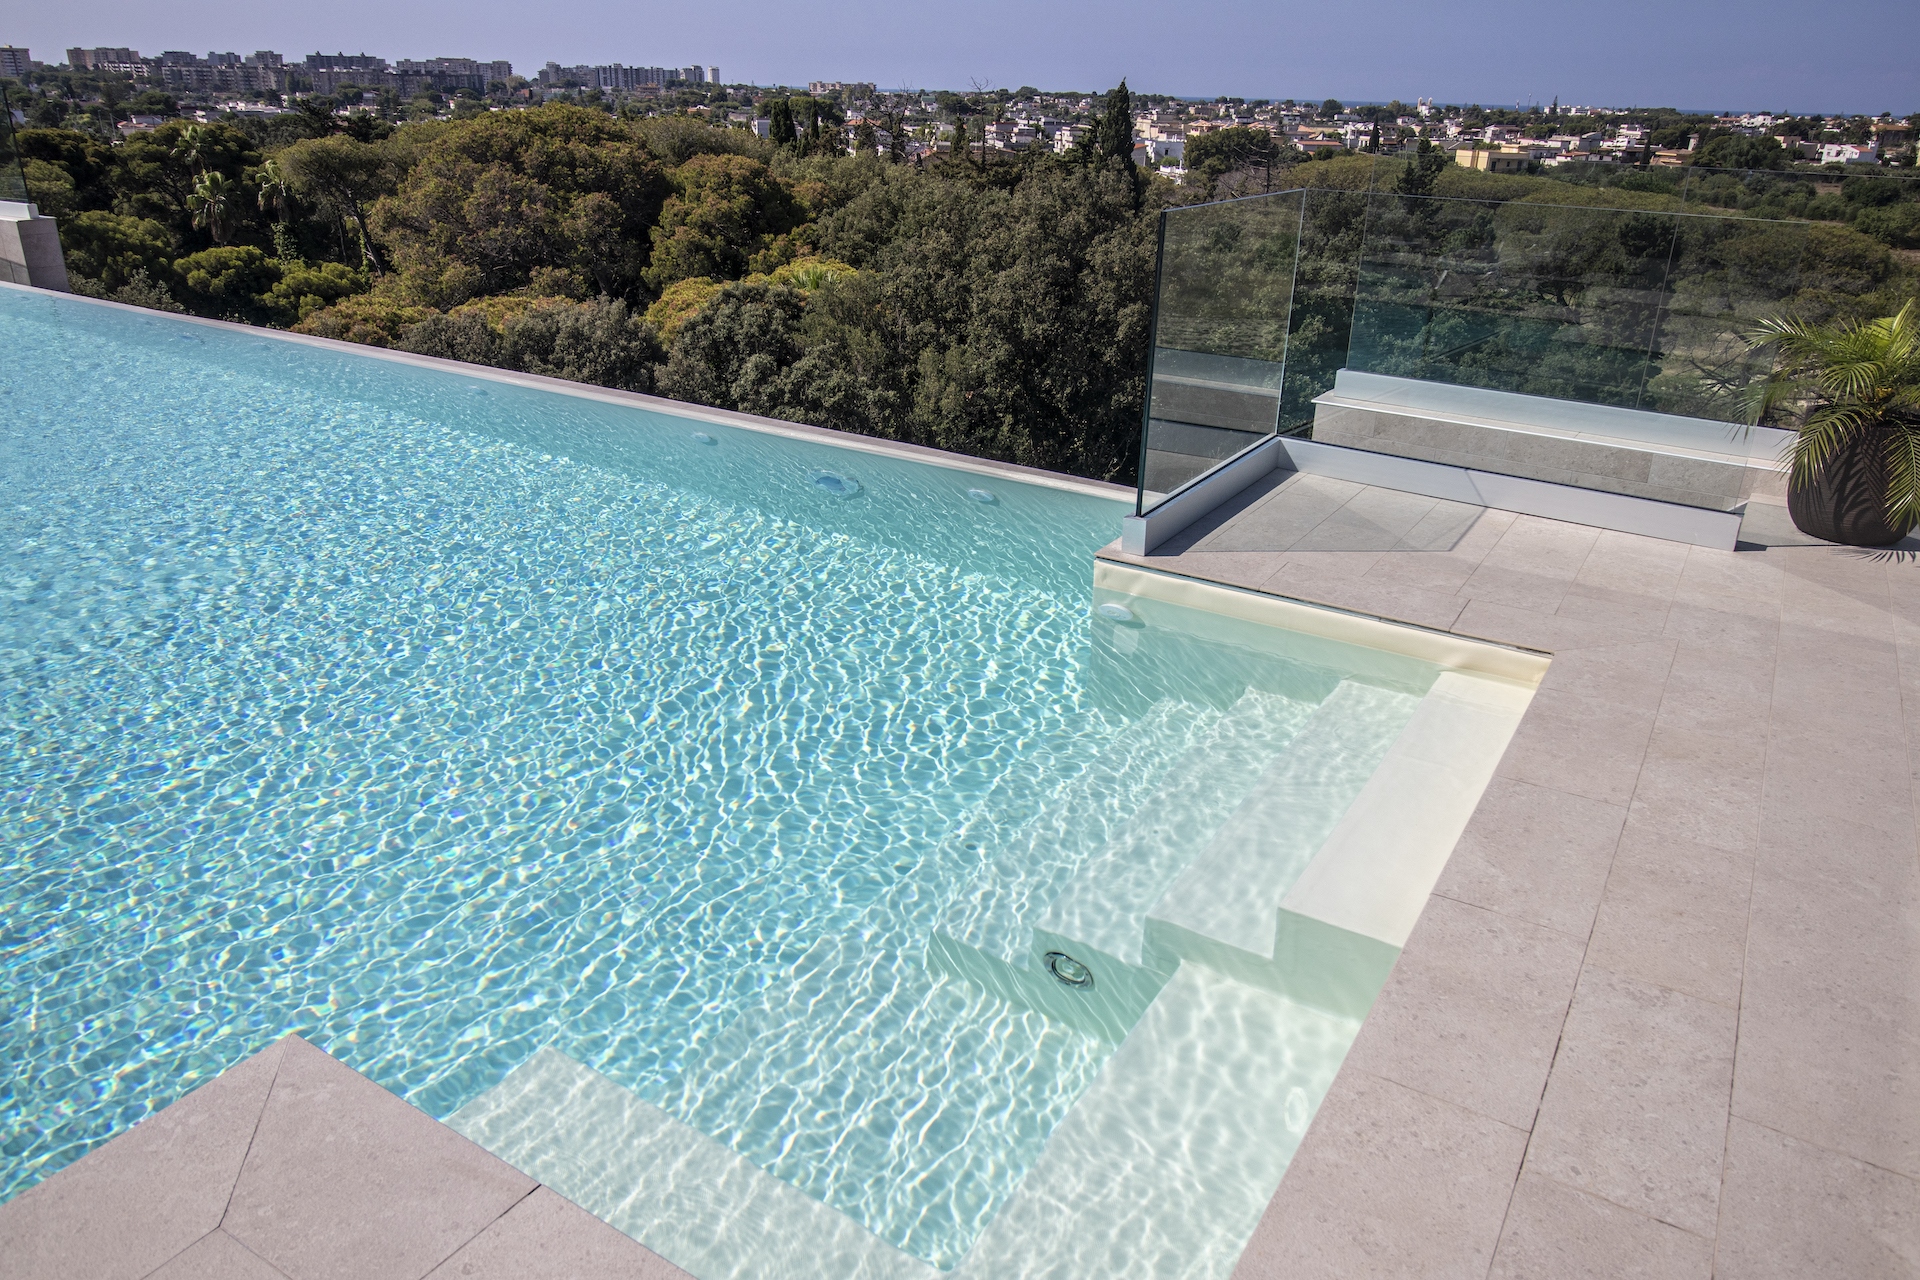 piscina terrazza arredo di lusso contract per Hotel Salina di Taranto realizzato dal Gruppo Rodi